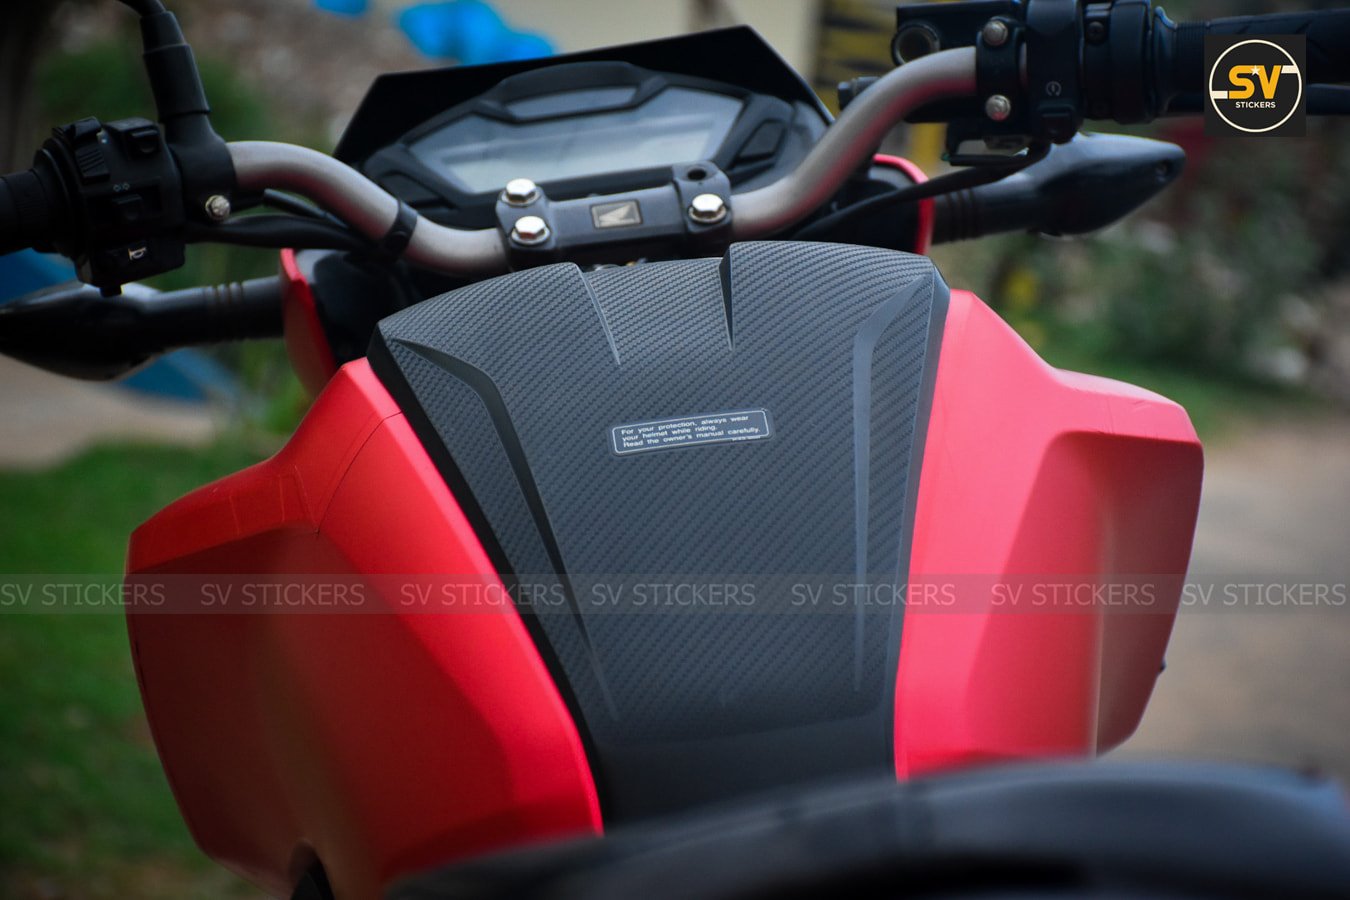 Meet Matte Metallic Red Honda Hornet 160 by SV Stickers - close up